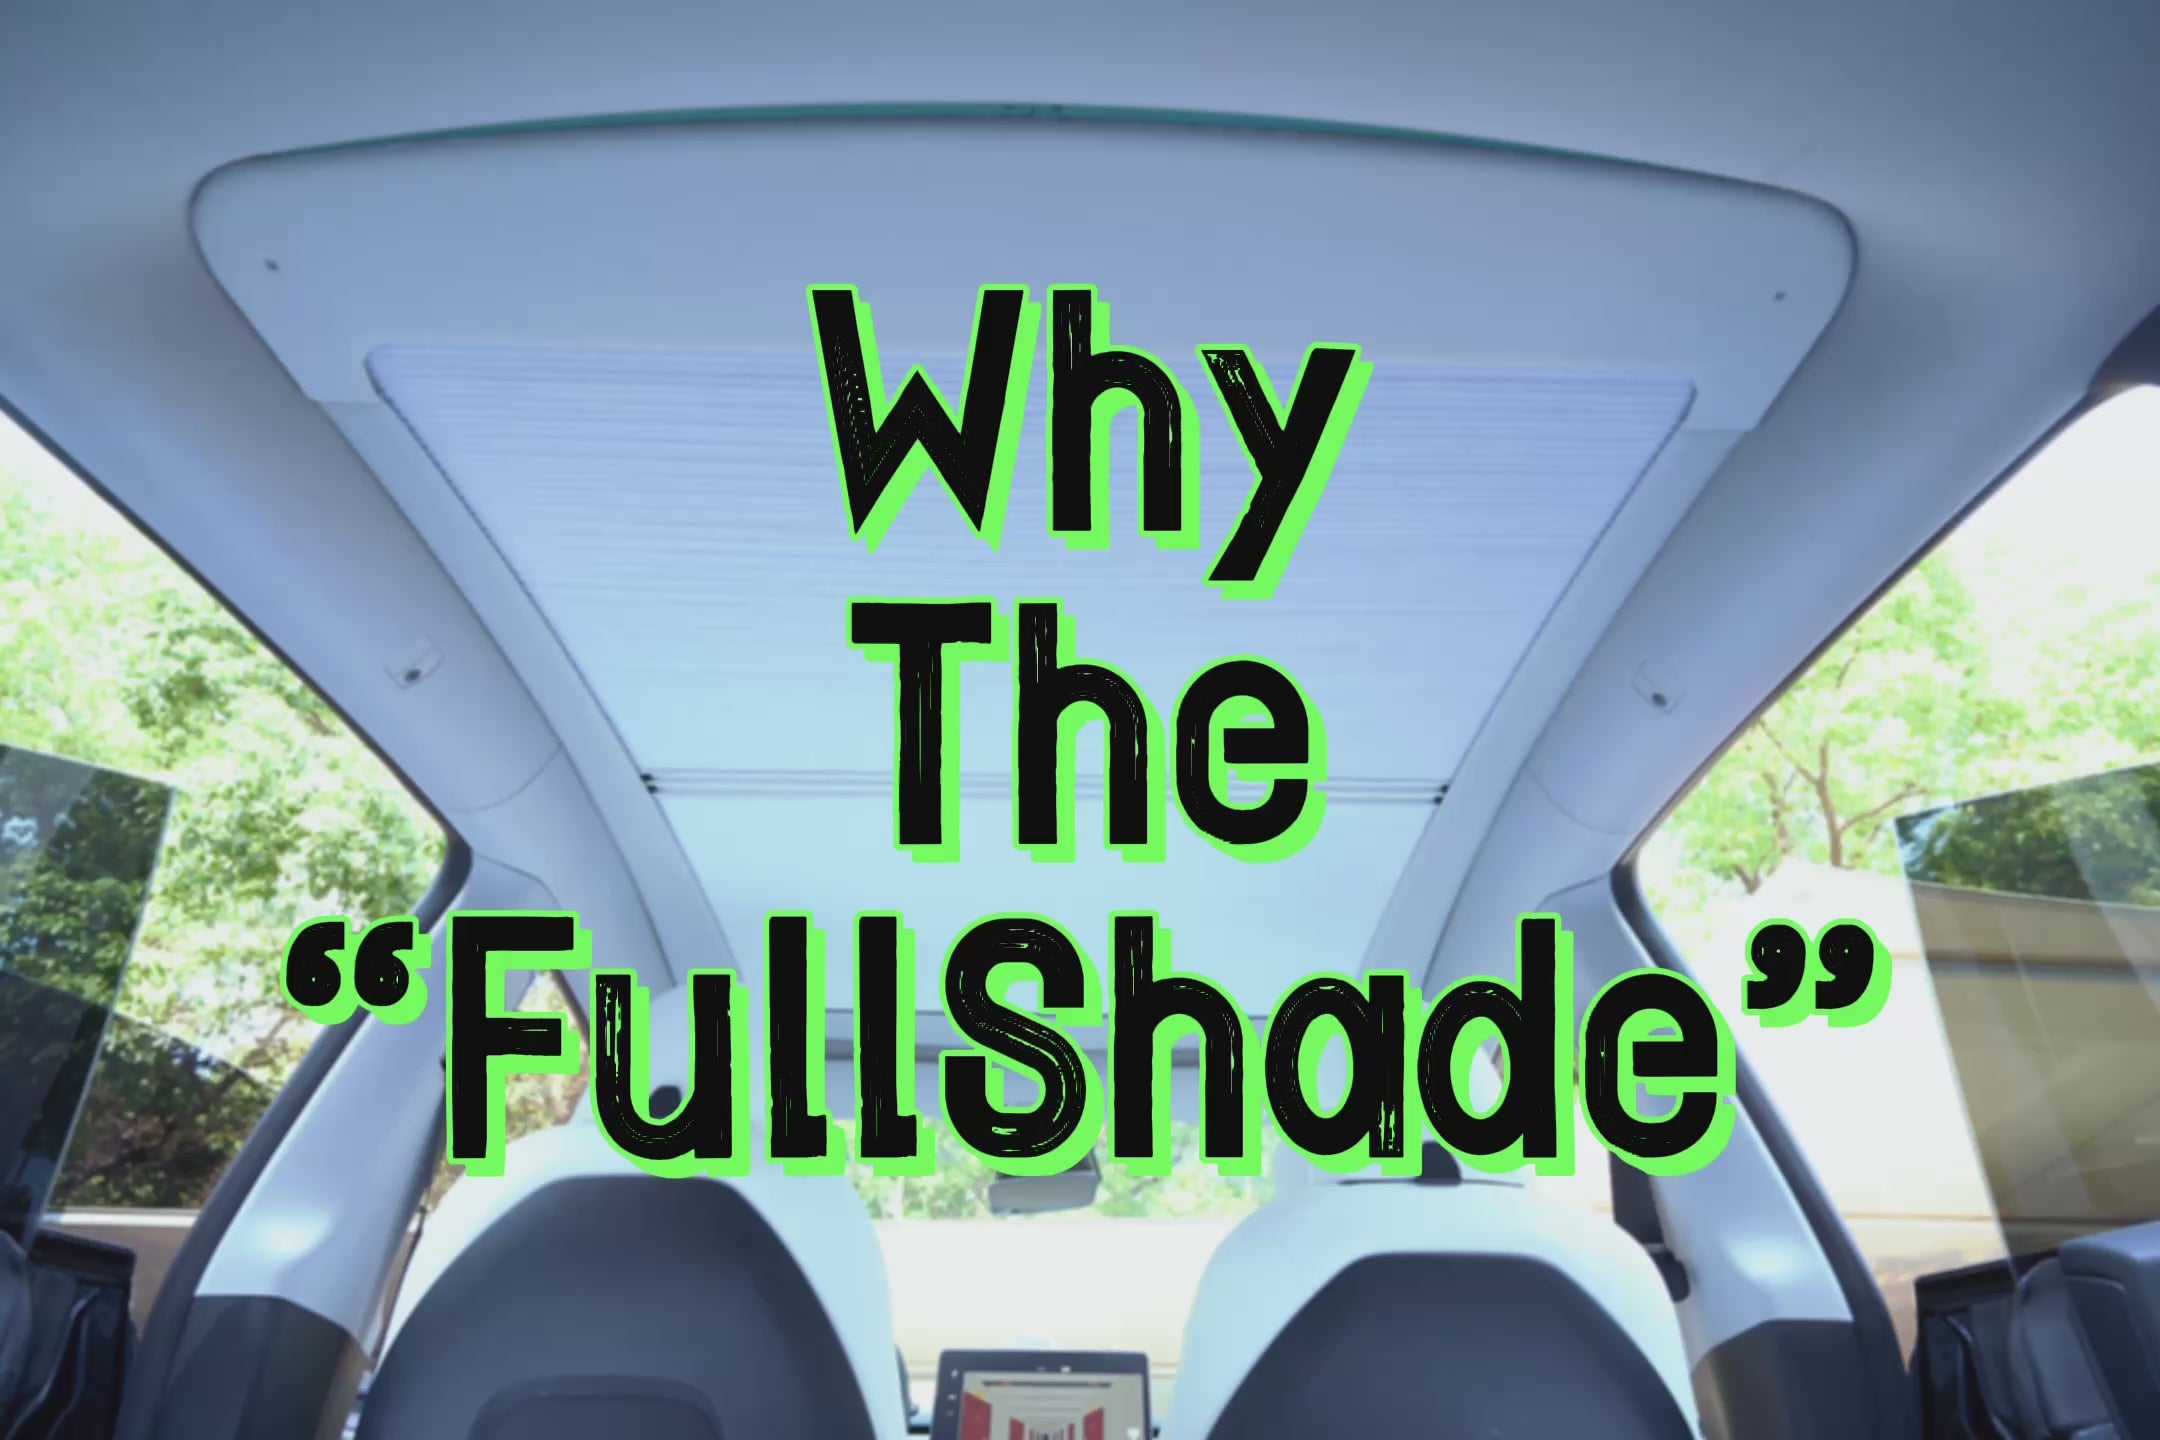 Fullshade 2.0 -- Retractable Roof Sunshade for Tesla Model 3